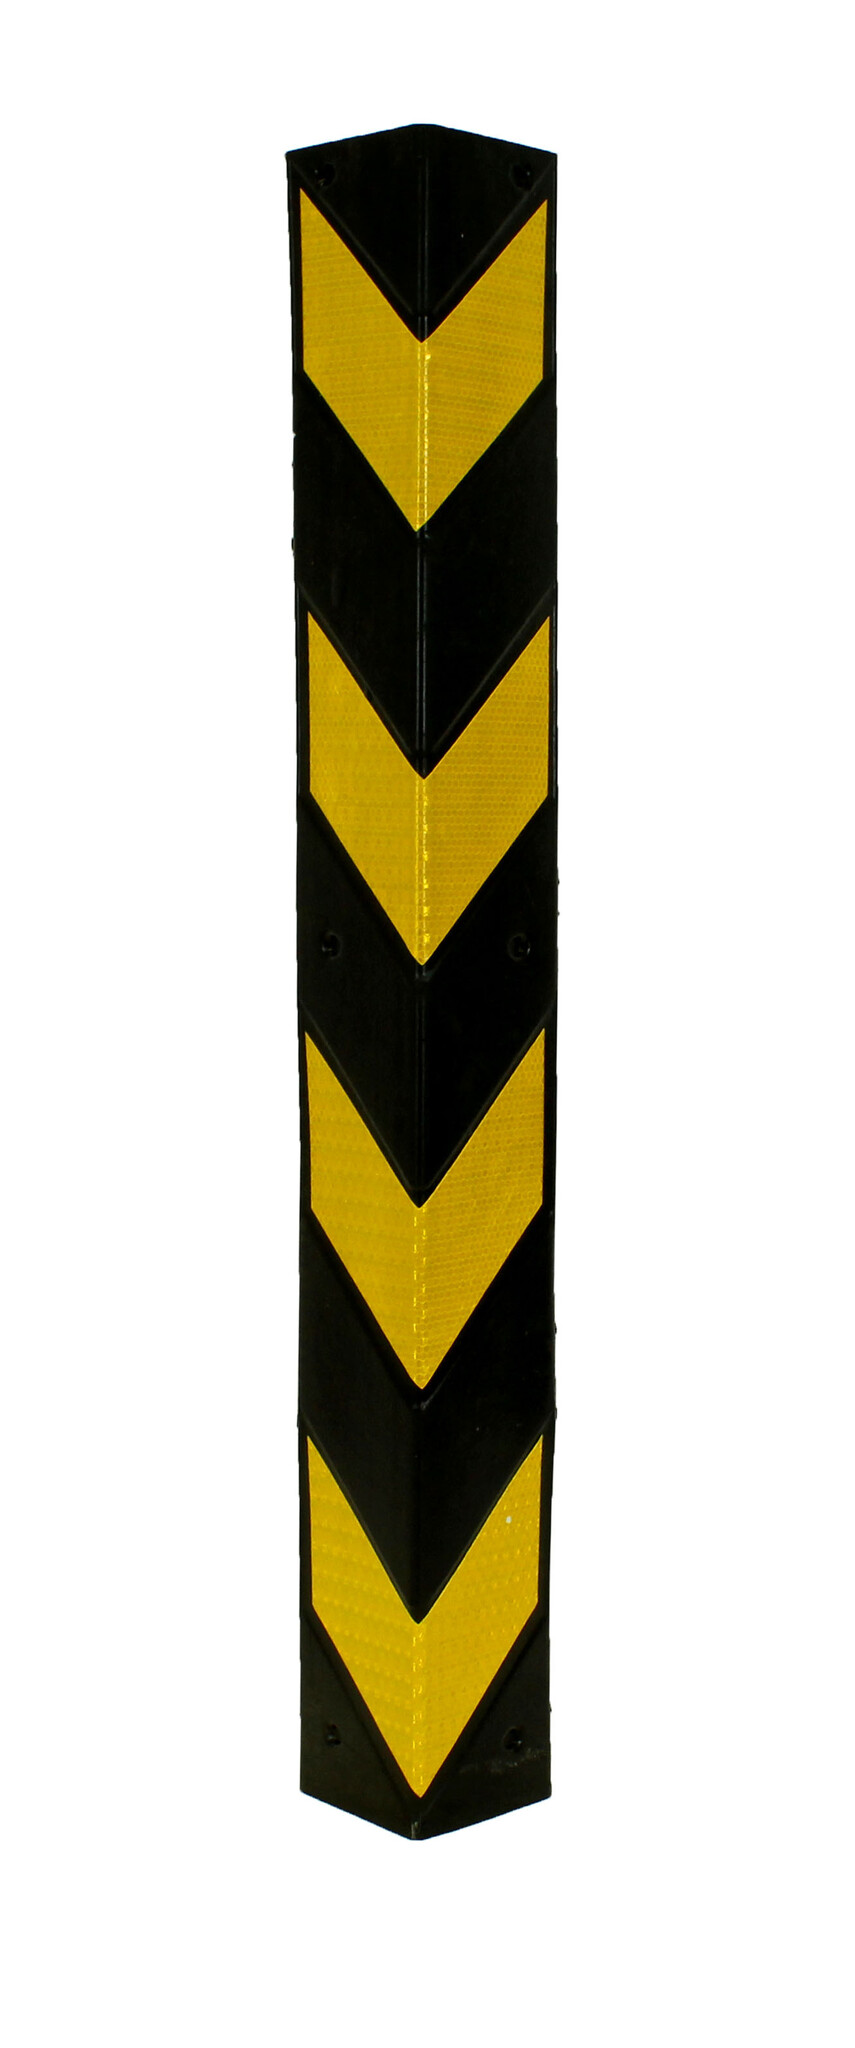 HOEKBESCHERMER 800 x100 x8 mm - geel/zwart